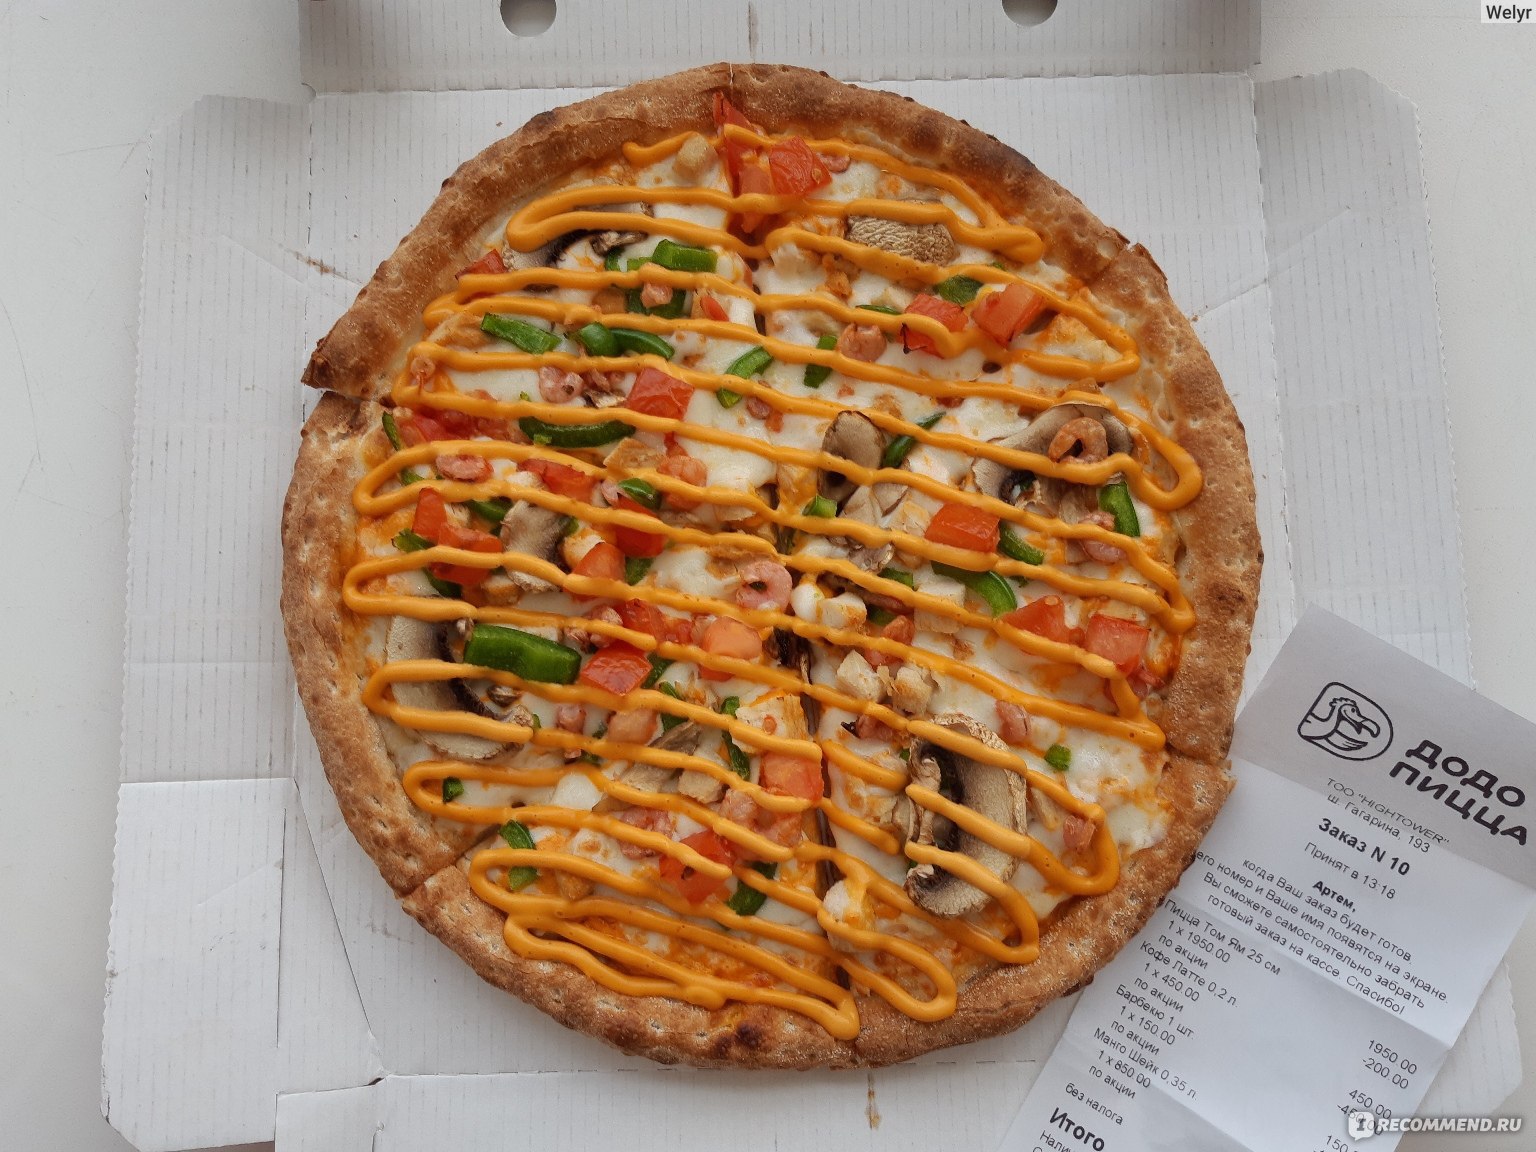 Пицца Додо "Том ям" фото